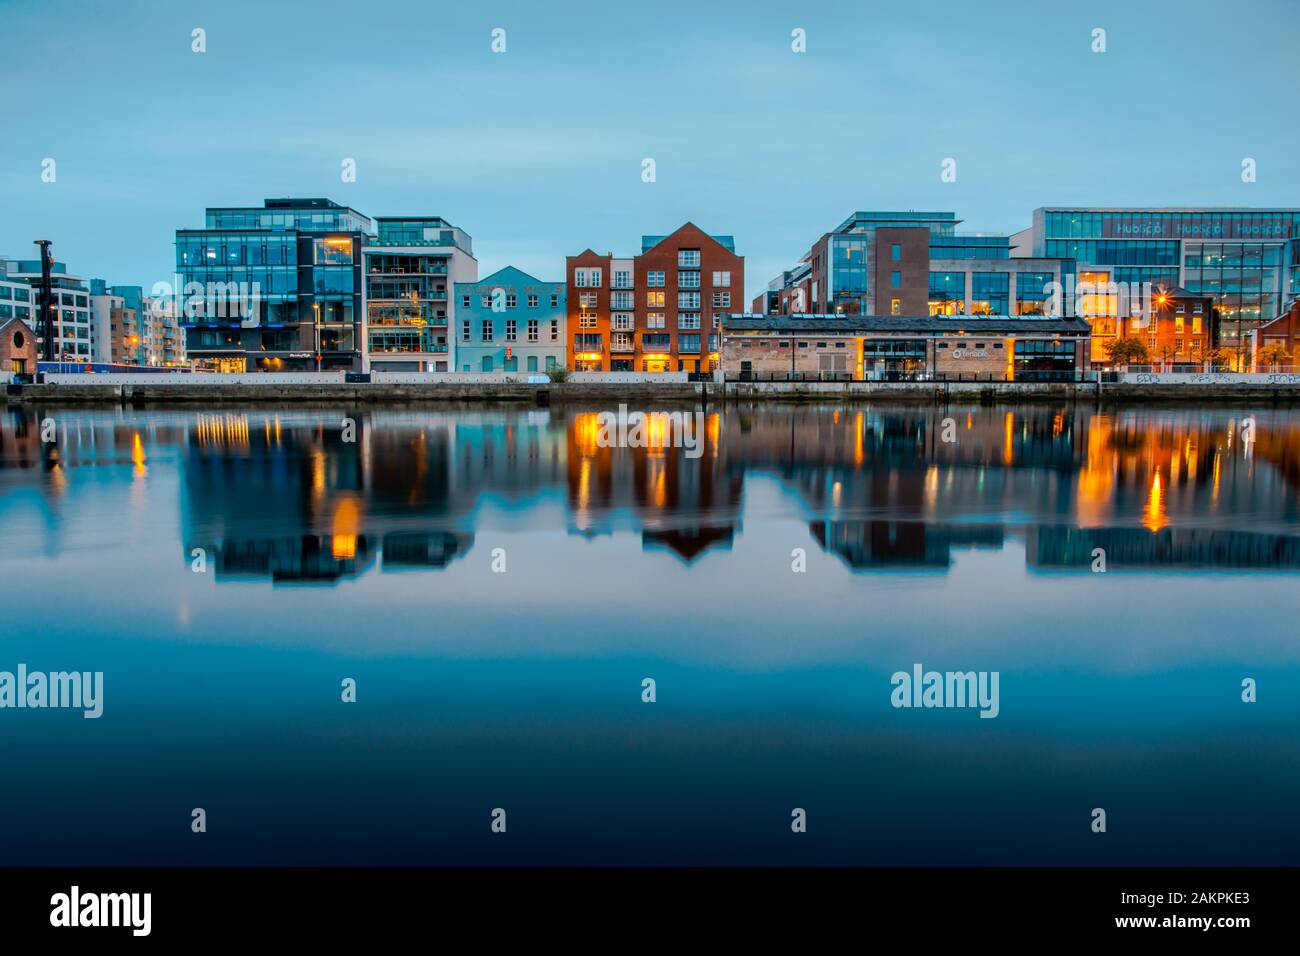 Vue sur la rivière Liffey. Les bâtiments de la ville reflètent la rivière.Beau paysage urbain irlandais. Banque D'Images